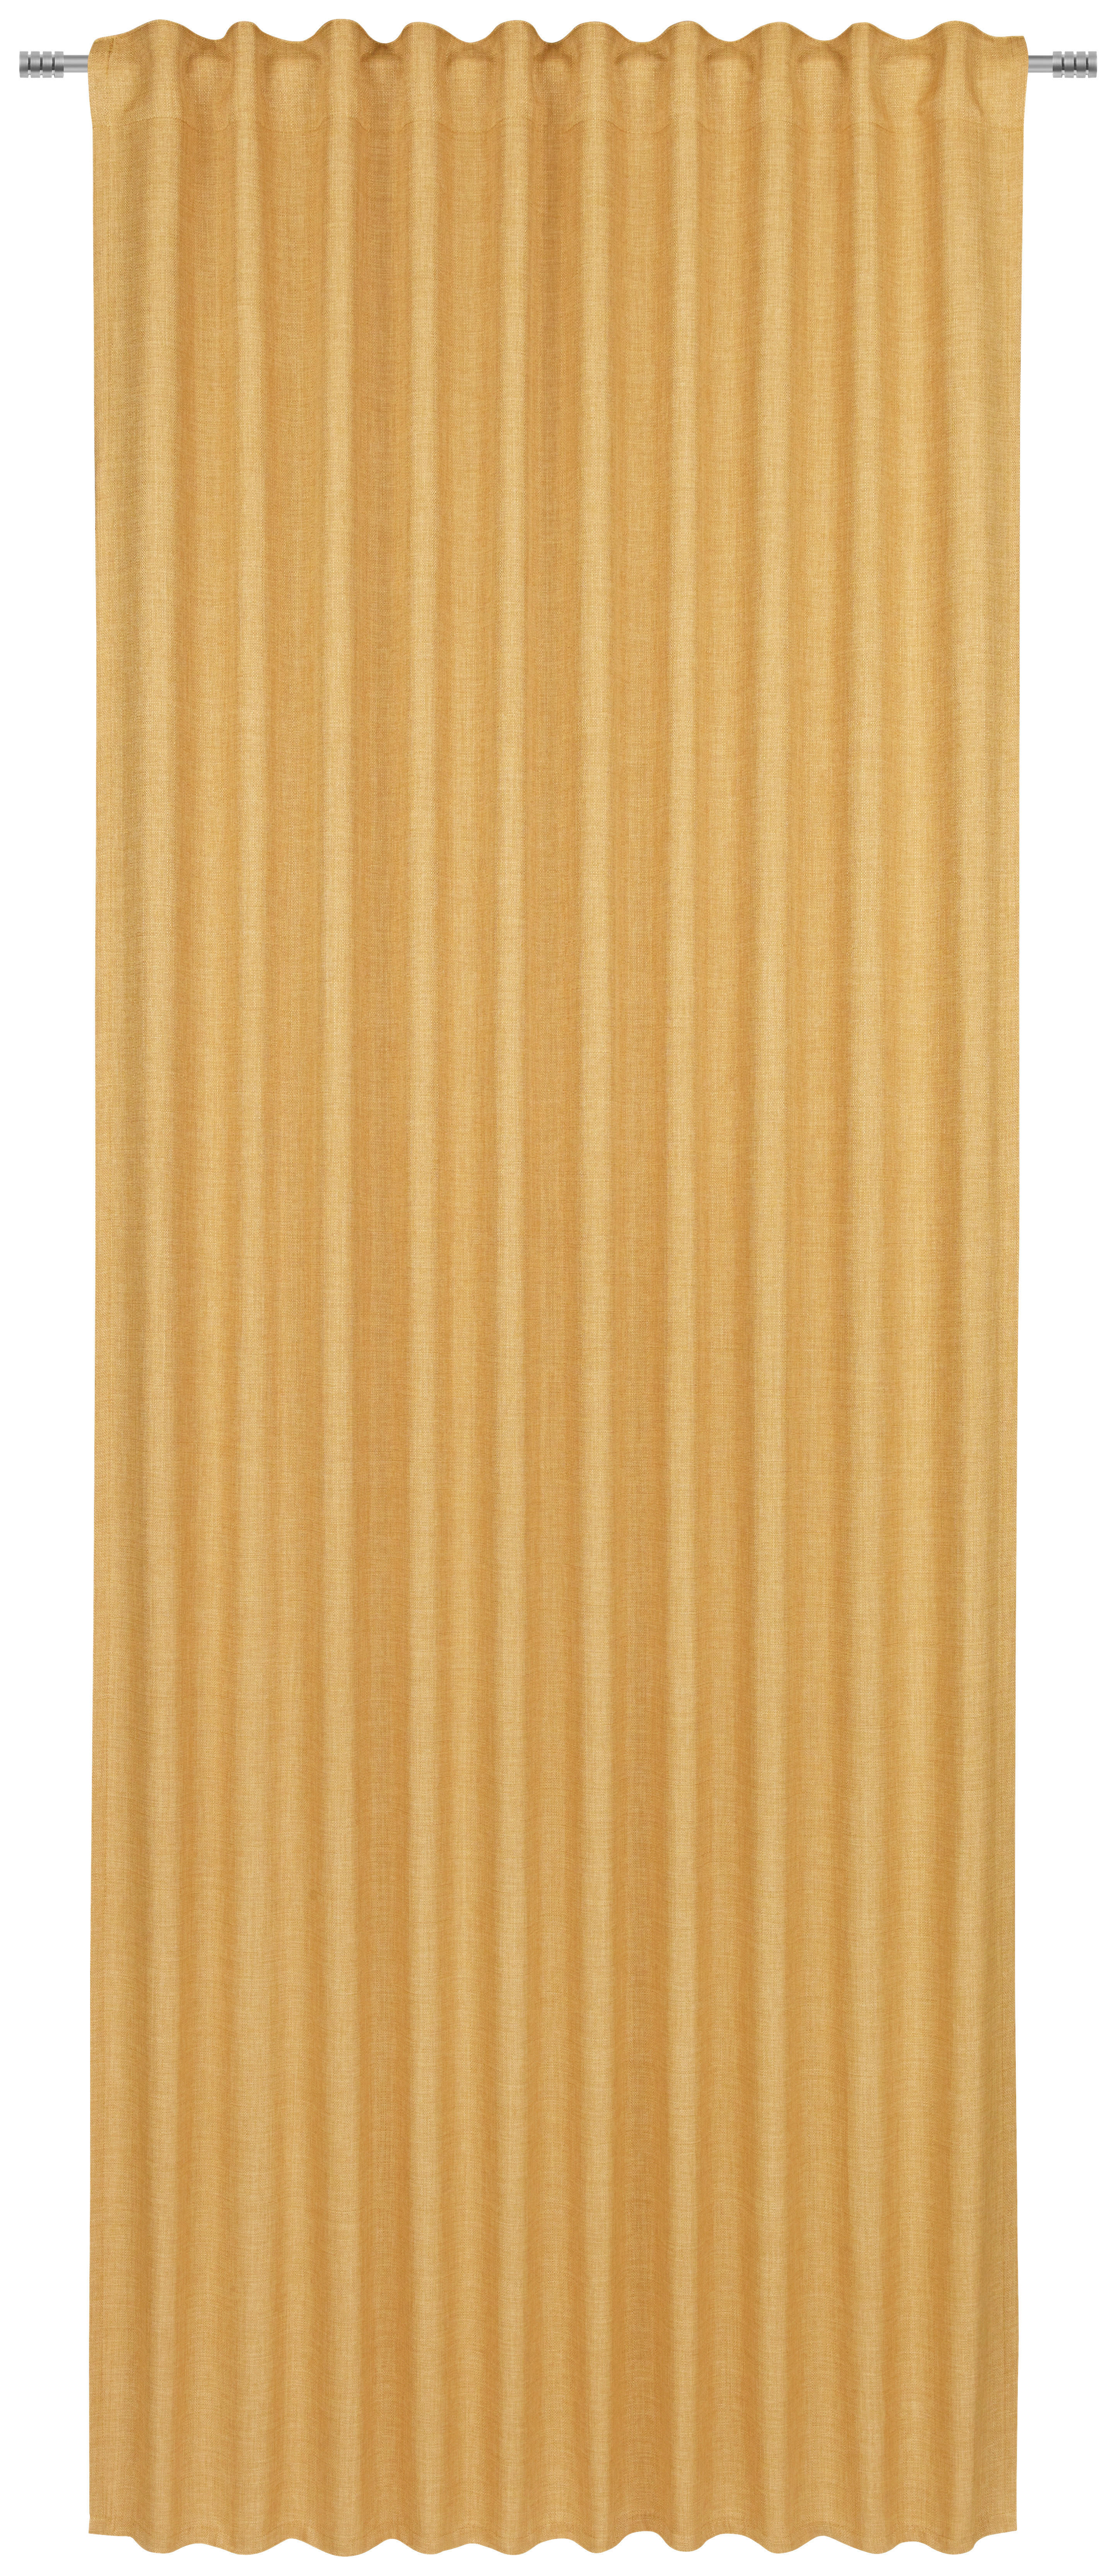 KÉSZFÜGGÖNY Részben fényzáró  - Sárga, Basics, Textil (140/245cm) - Boxxx